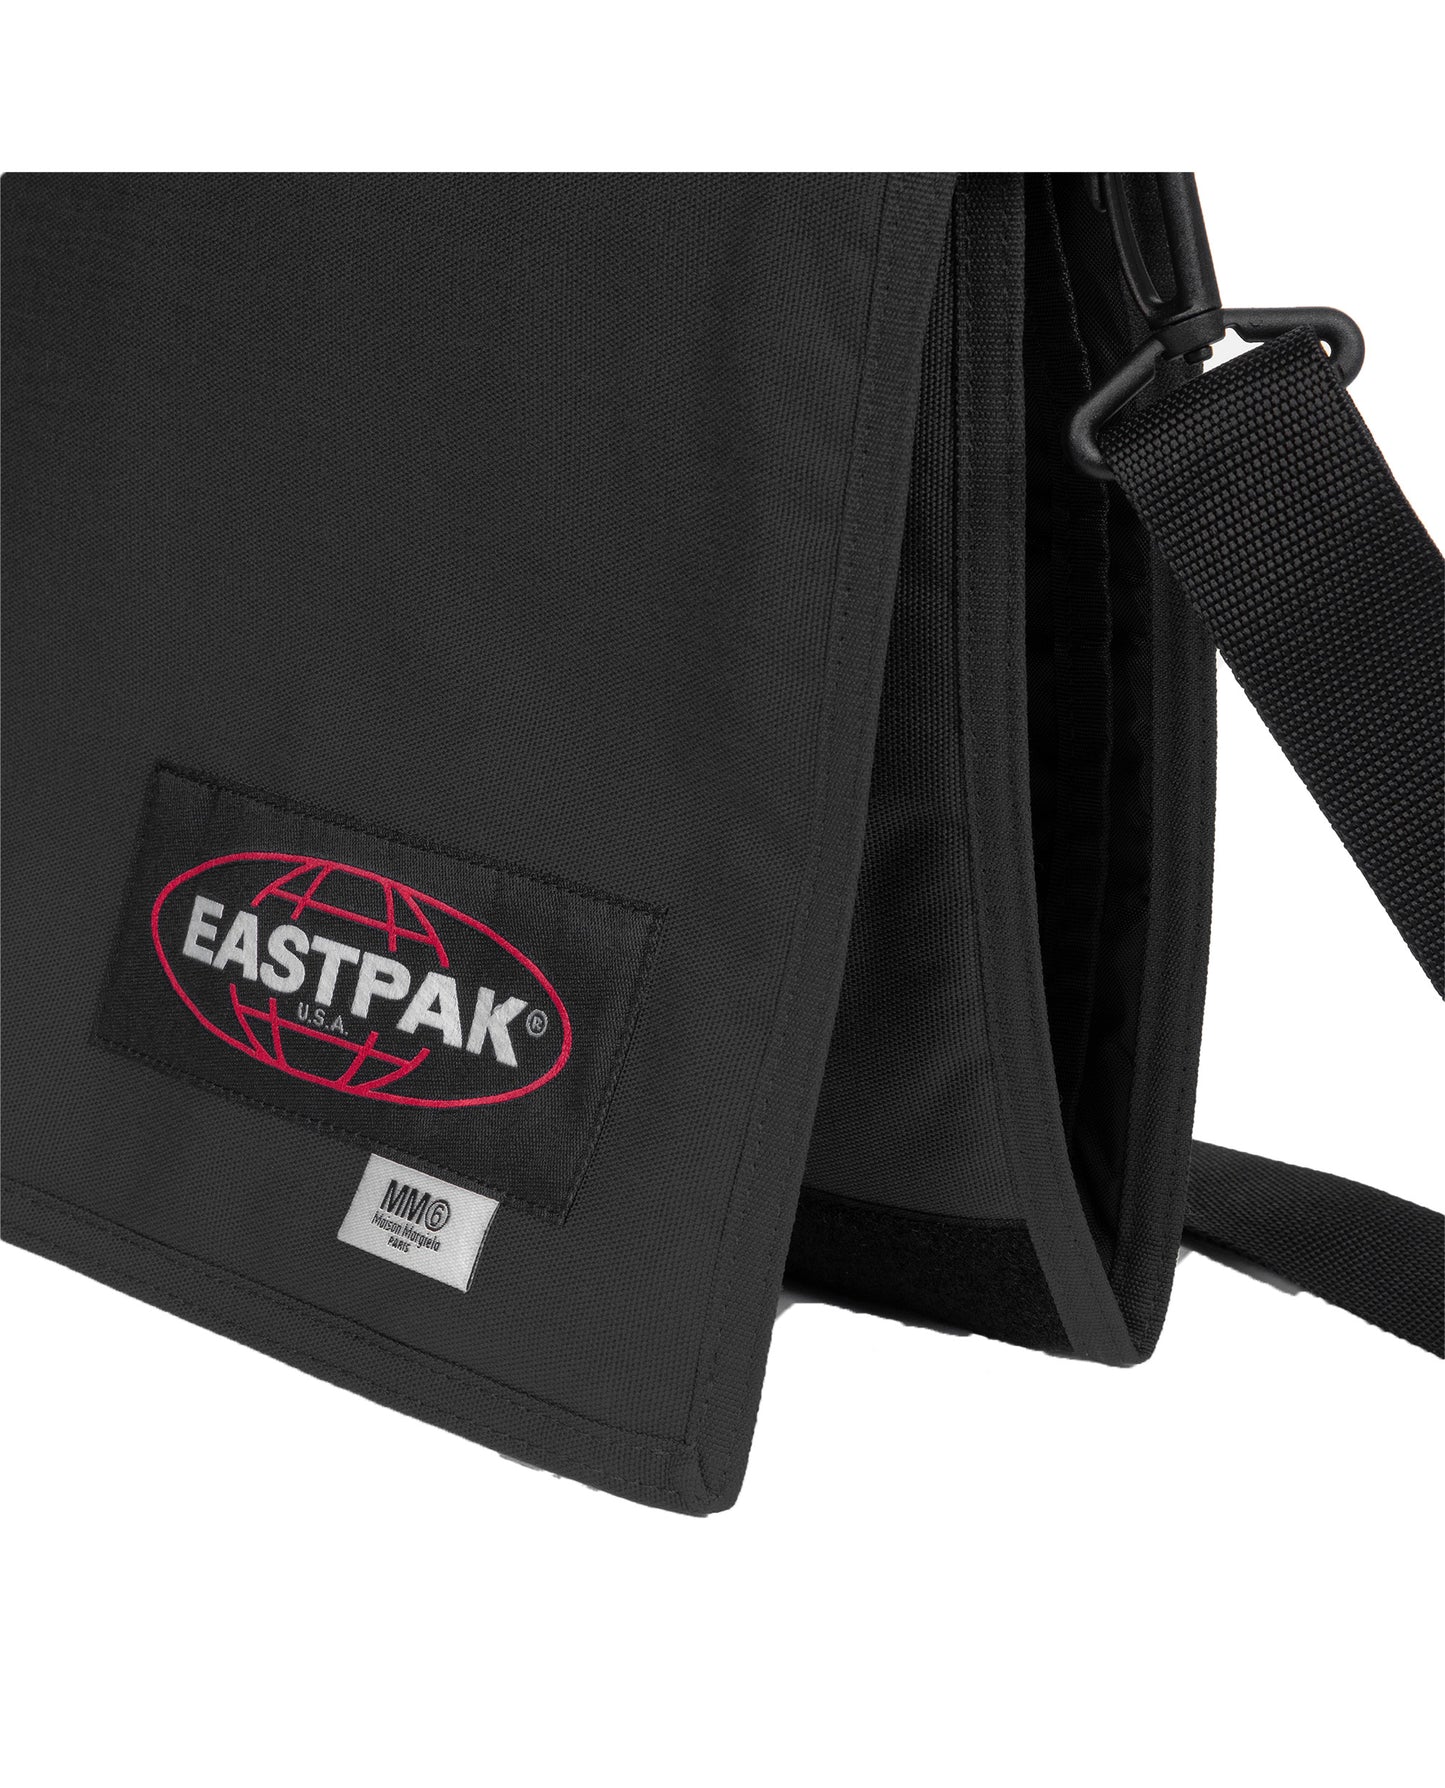 2000s Vintage Eastpak Messenger Bag - Size OS – Constant Practice